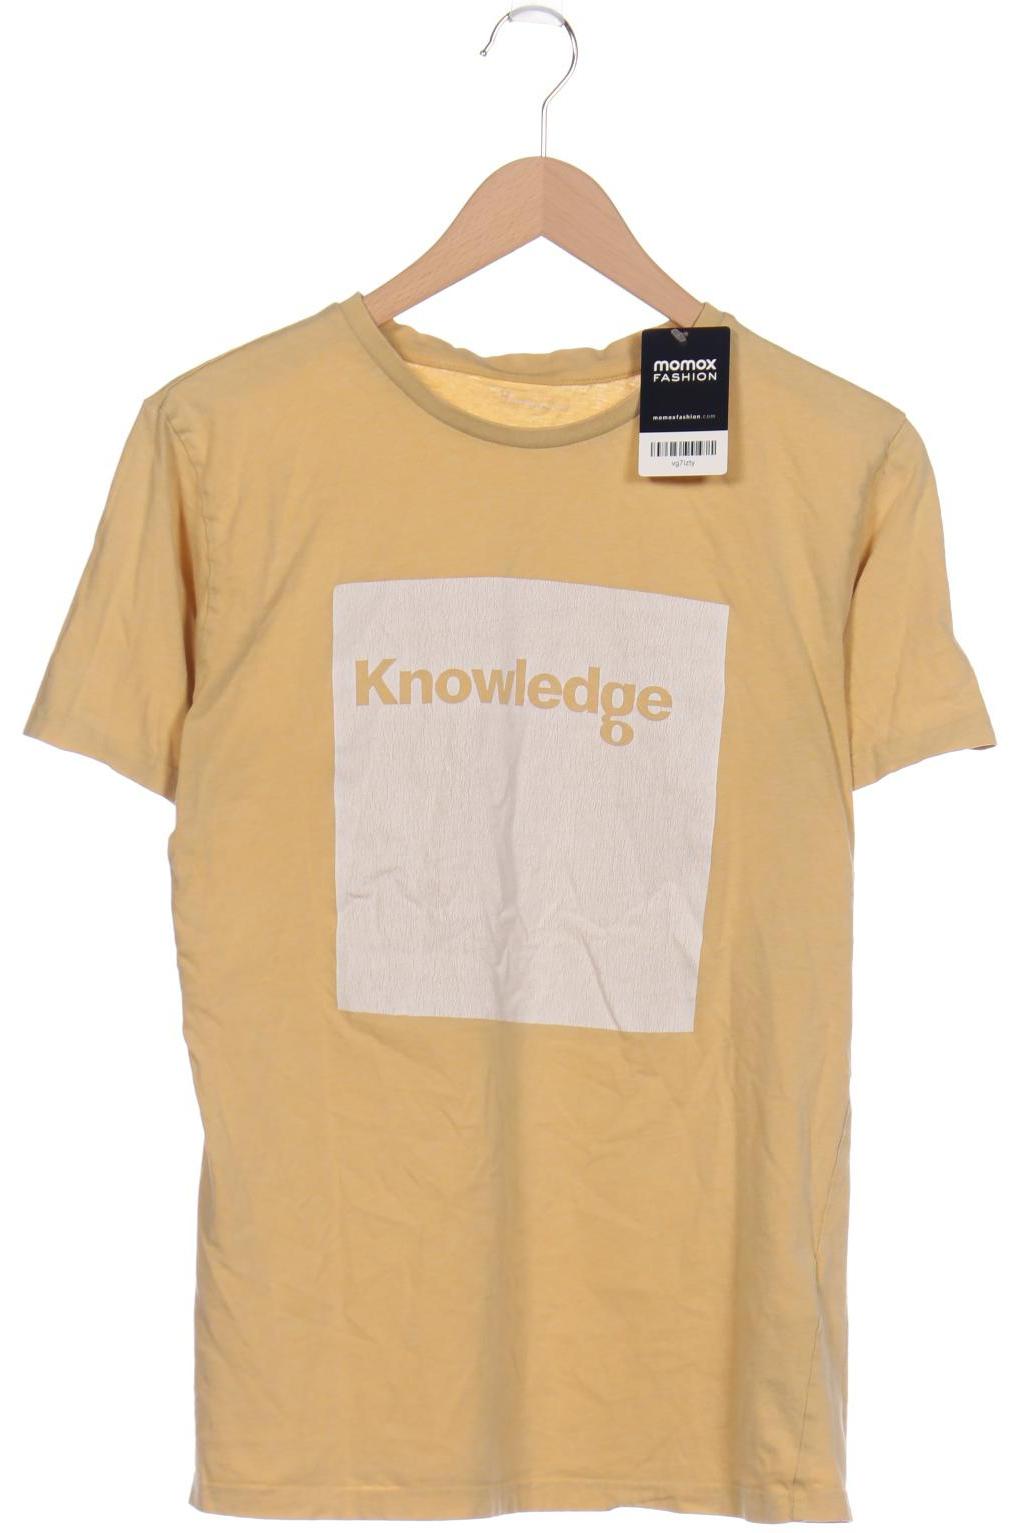 Knowledge Cotton Apparel Herren T-Shirt, gelb von Knowledge Cotton Apparel